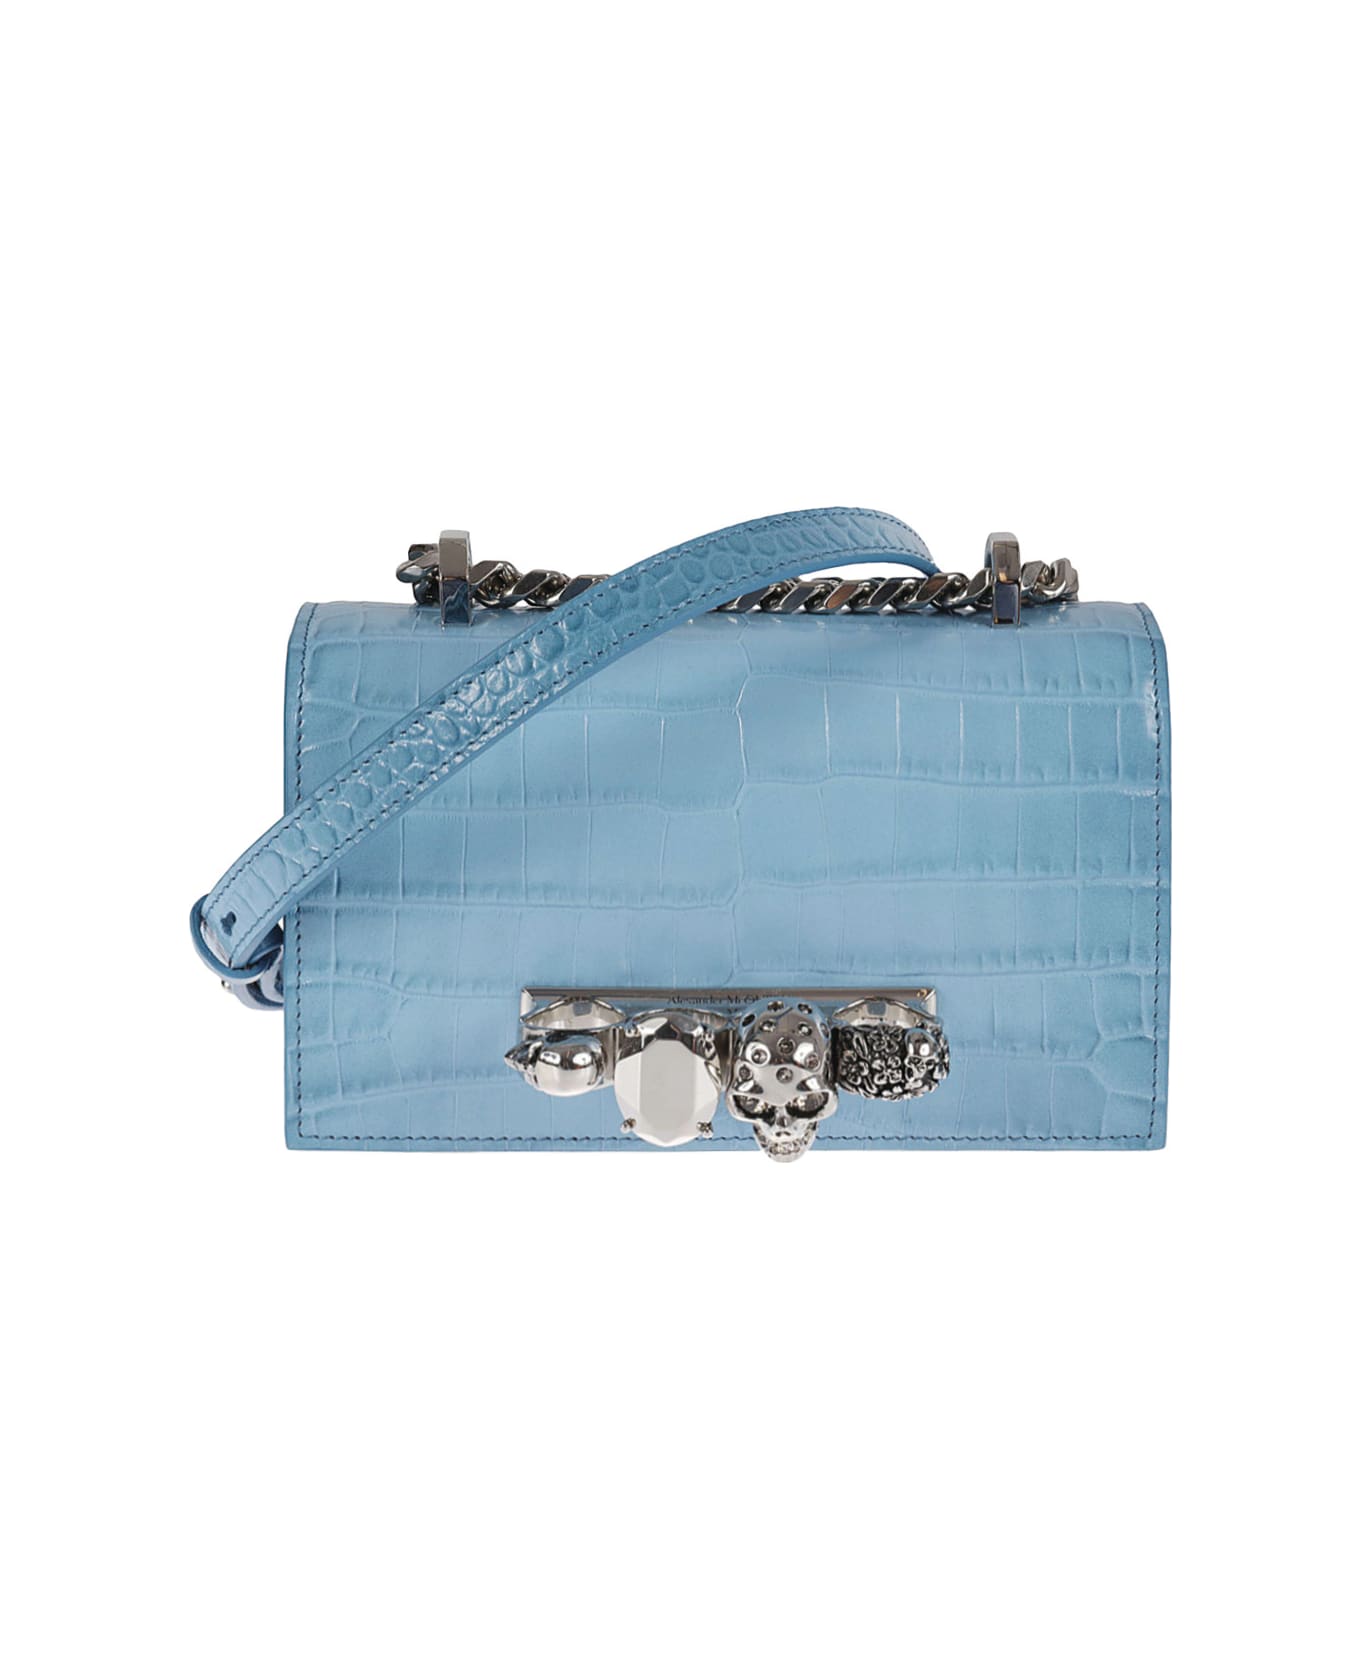 Alexander McQueen Jeweled Satchel Bag - Blu